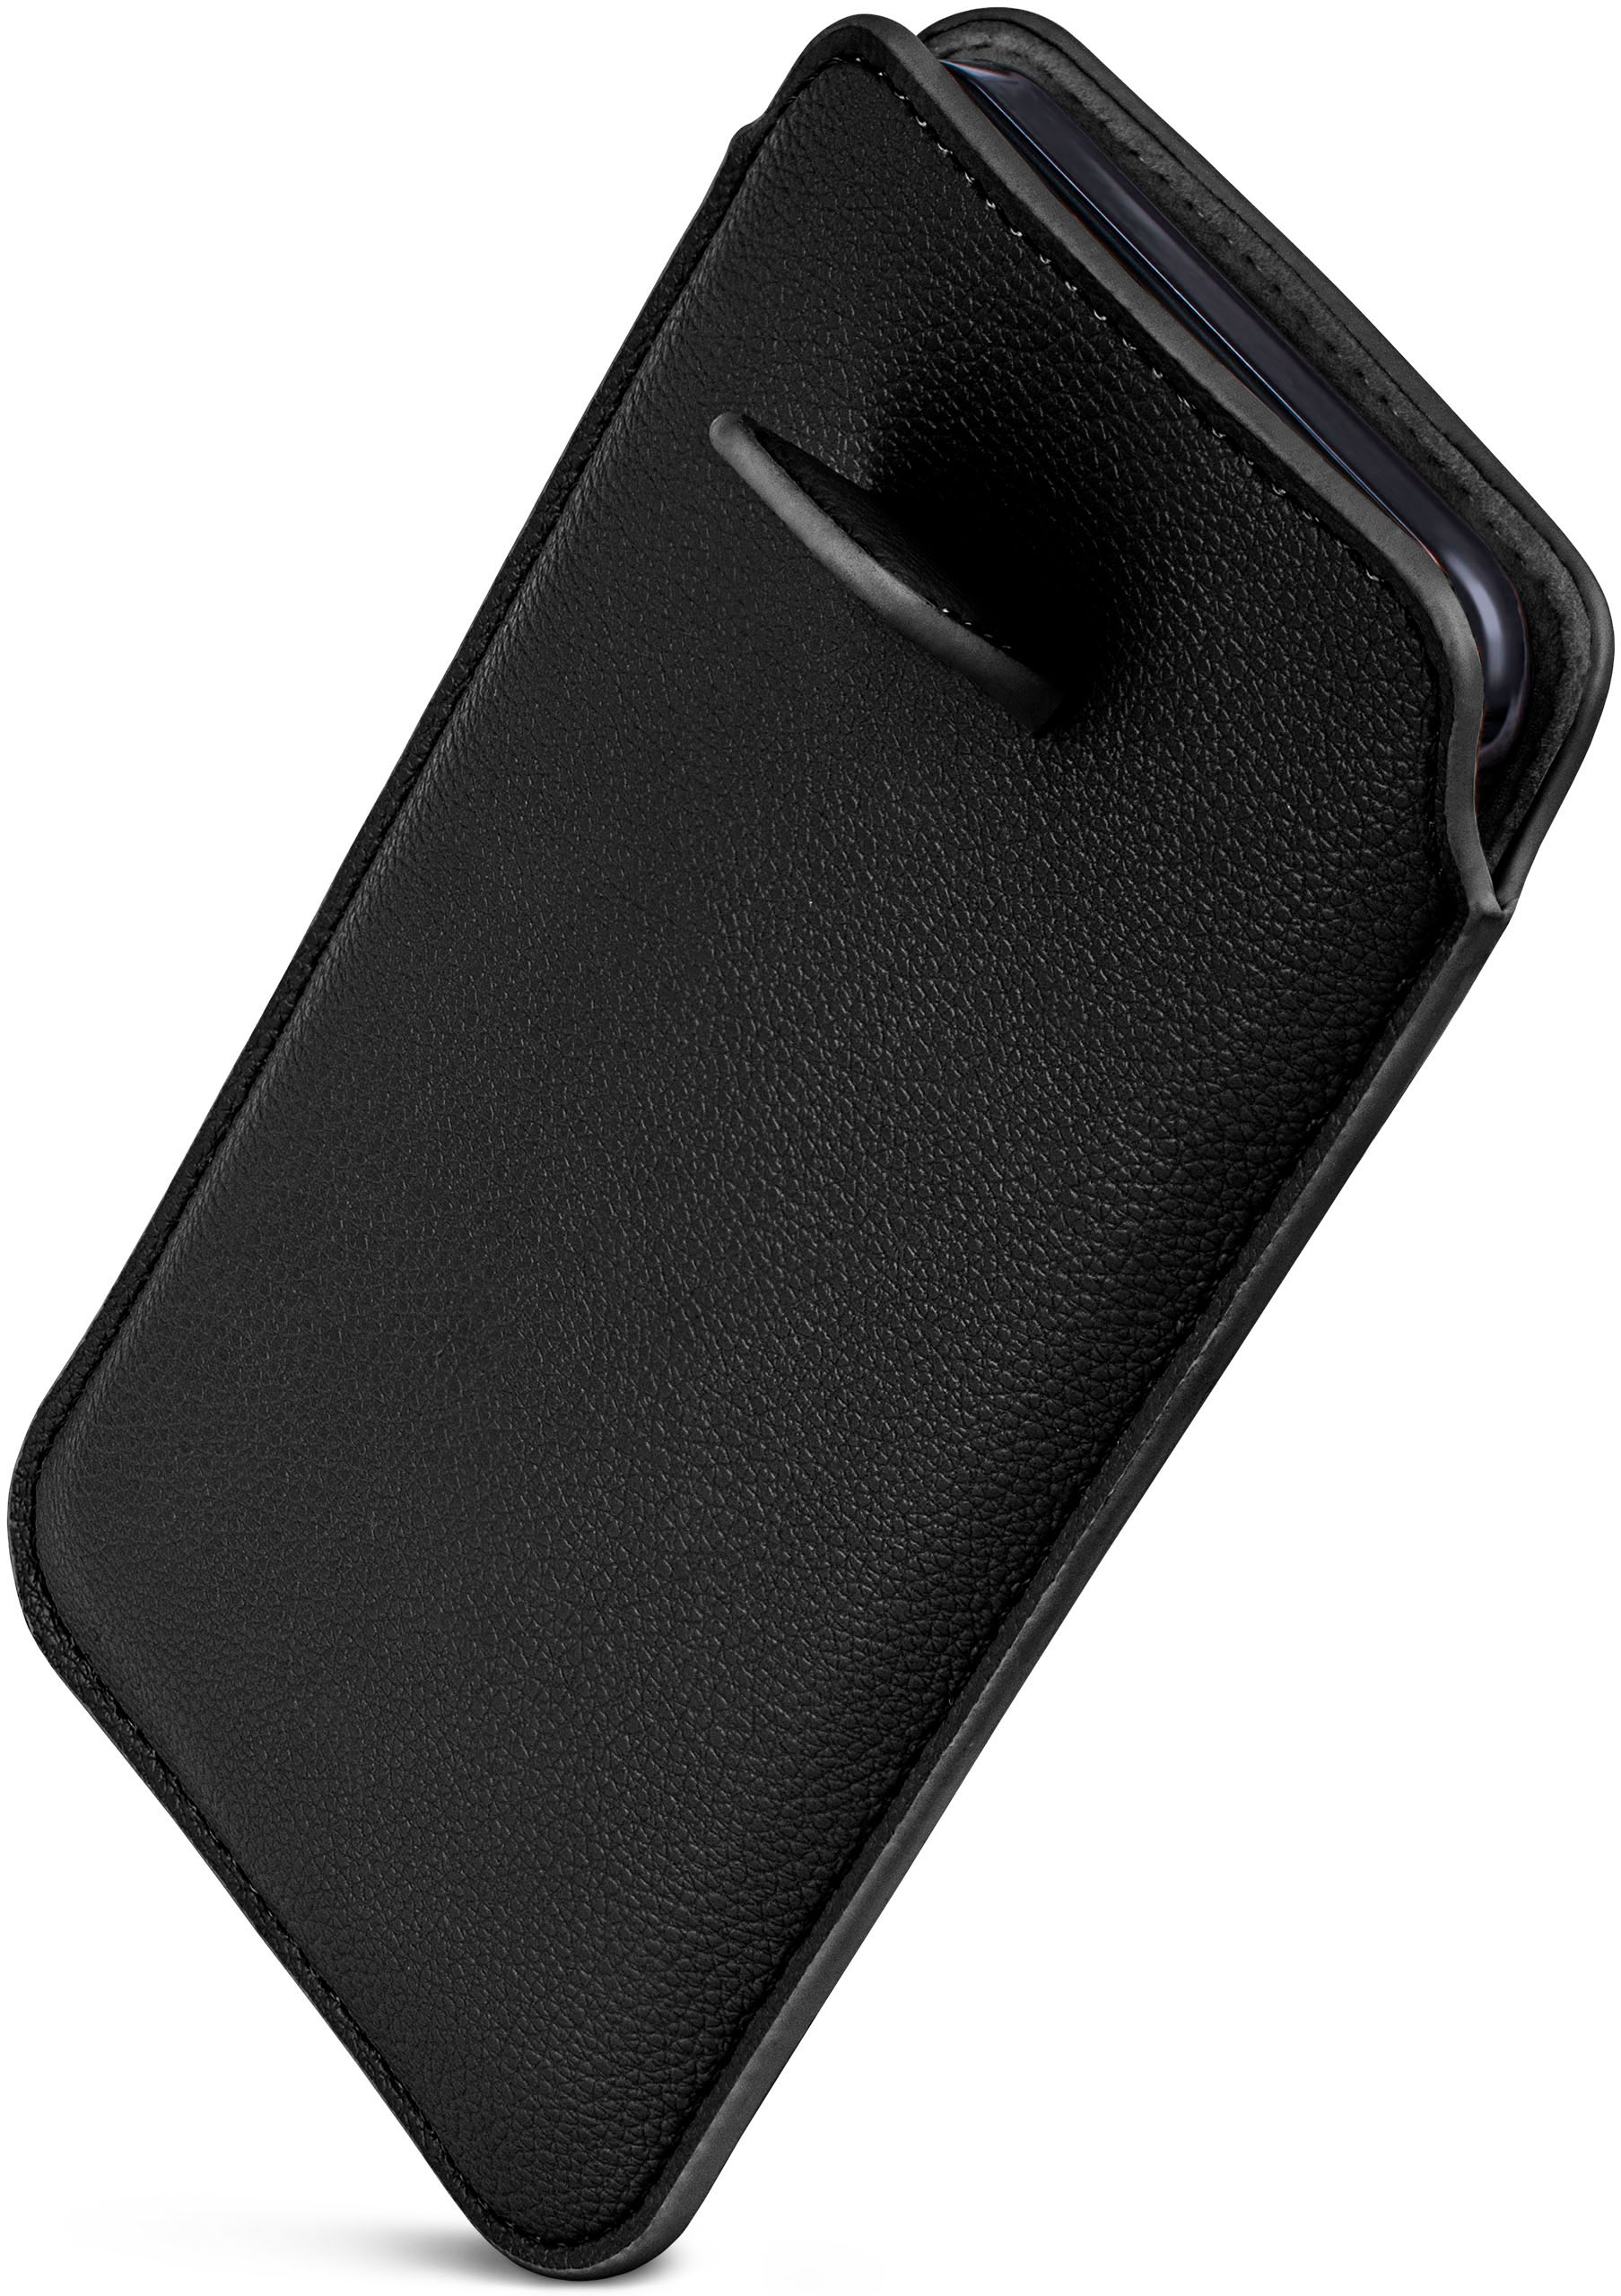 Zuglasche, Samsung, Einsteckhülle Galaxy Mini, ONEFLOW S3 Full Schwarz Cover, mit